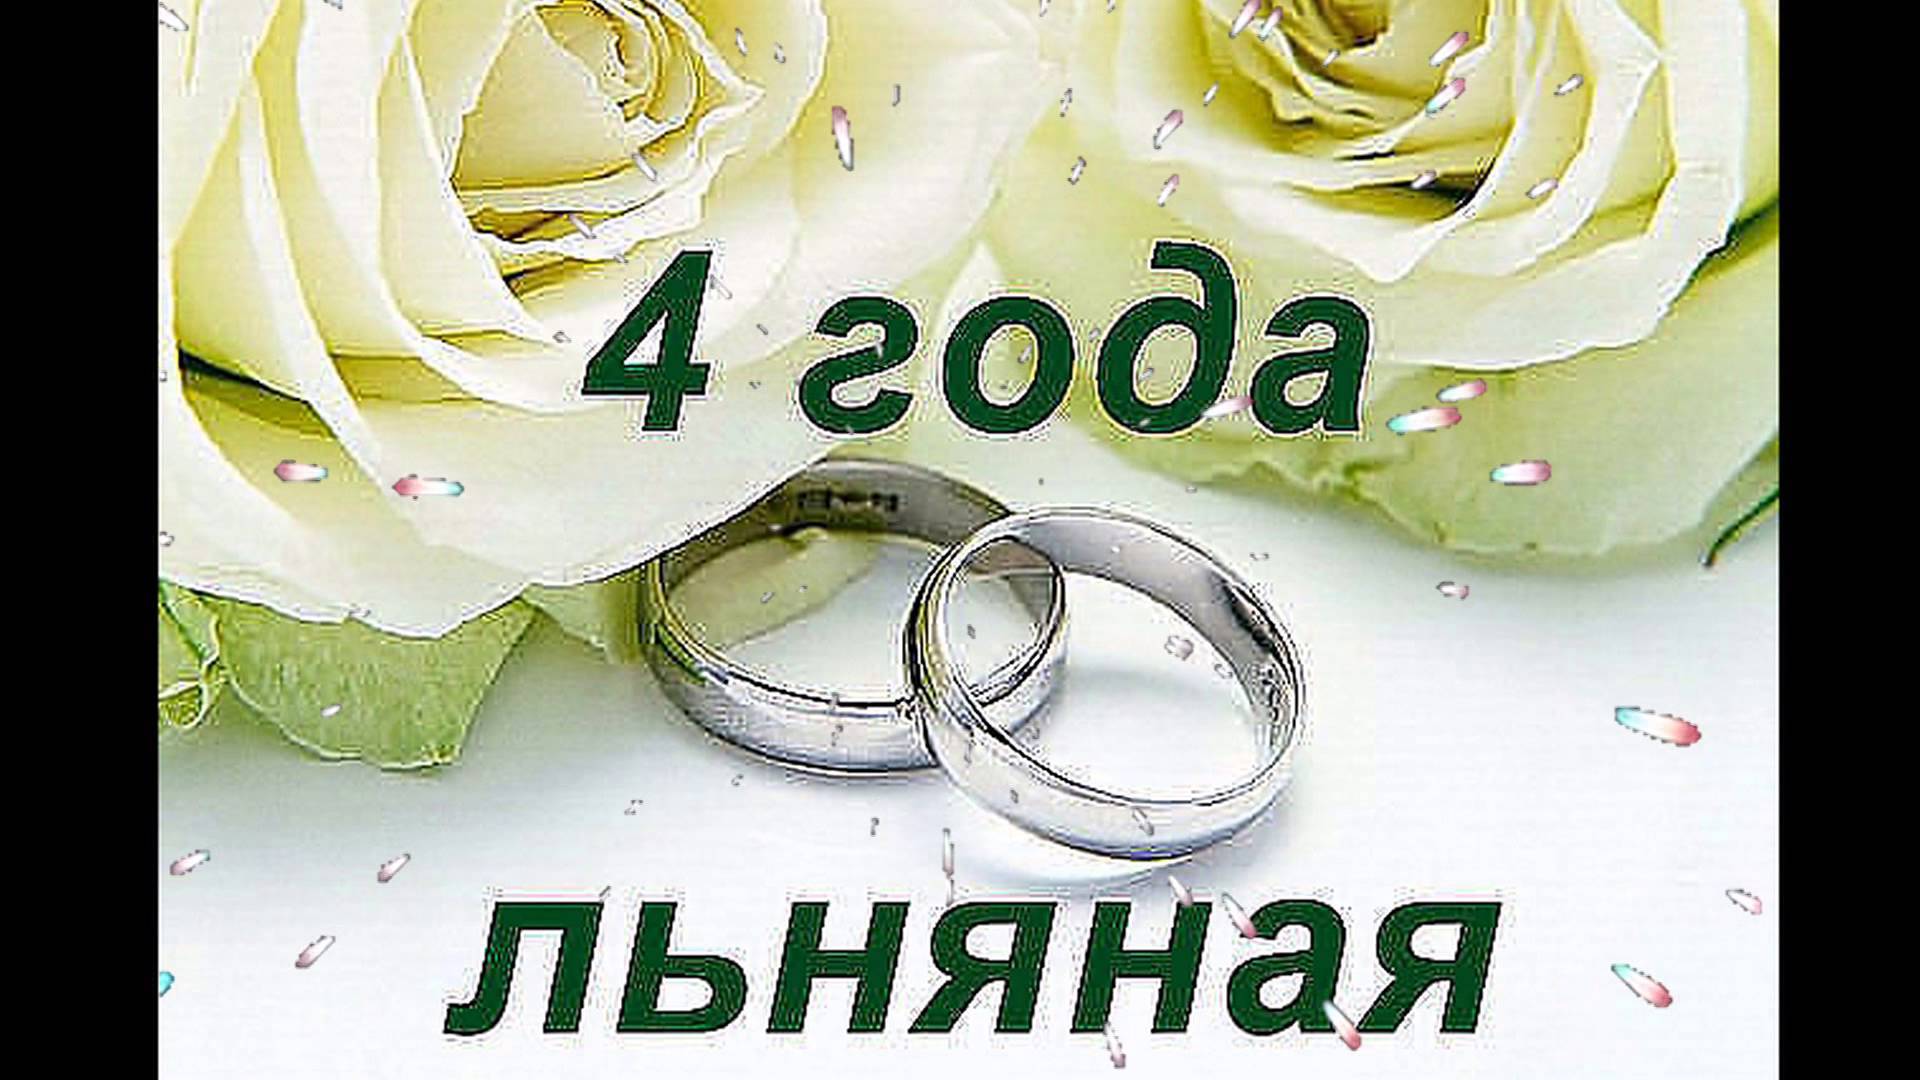 3 Года Брака Какая Свадьба Поздравления